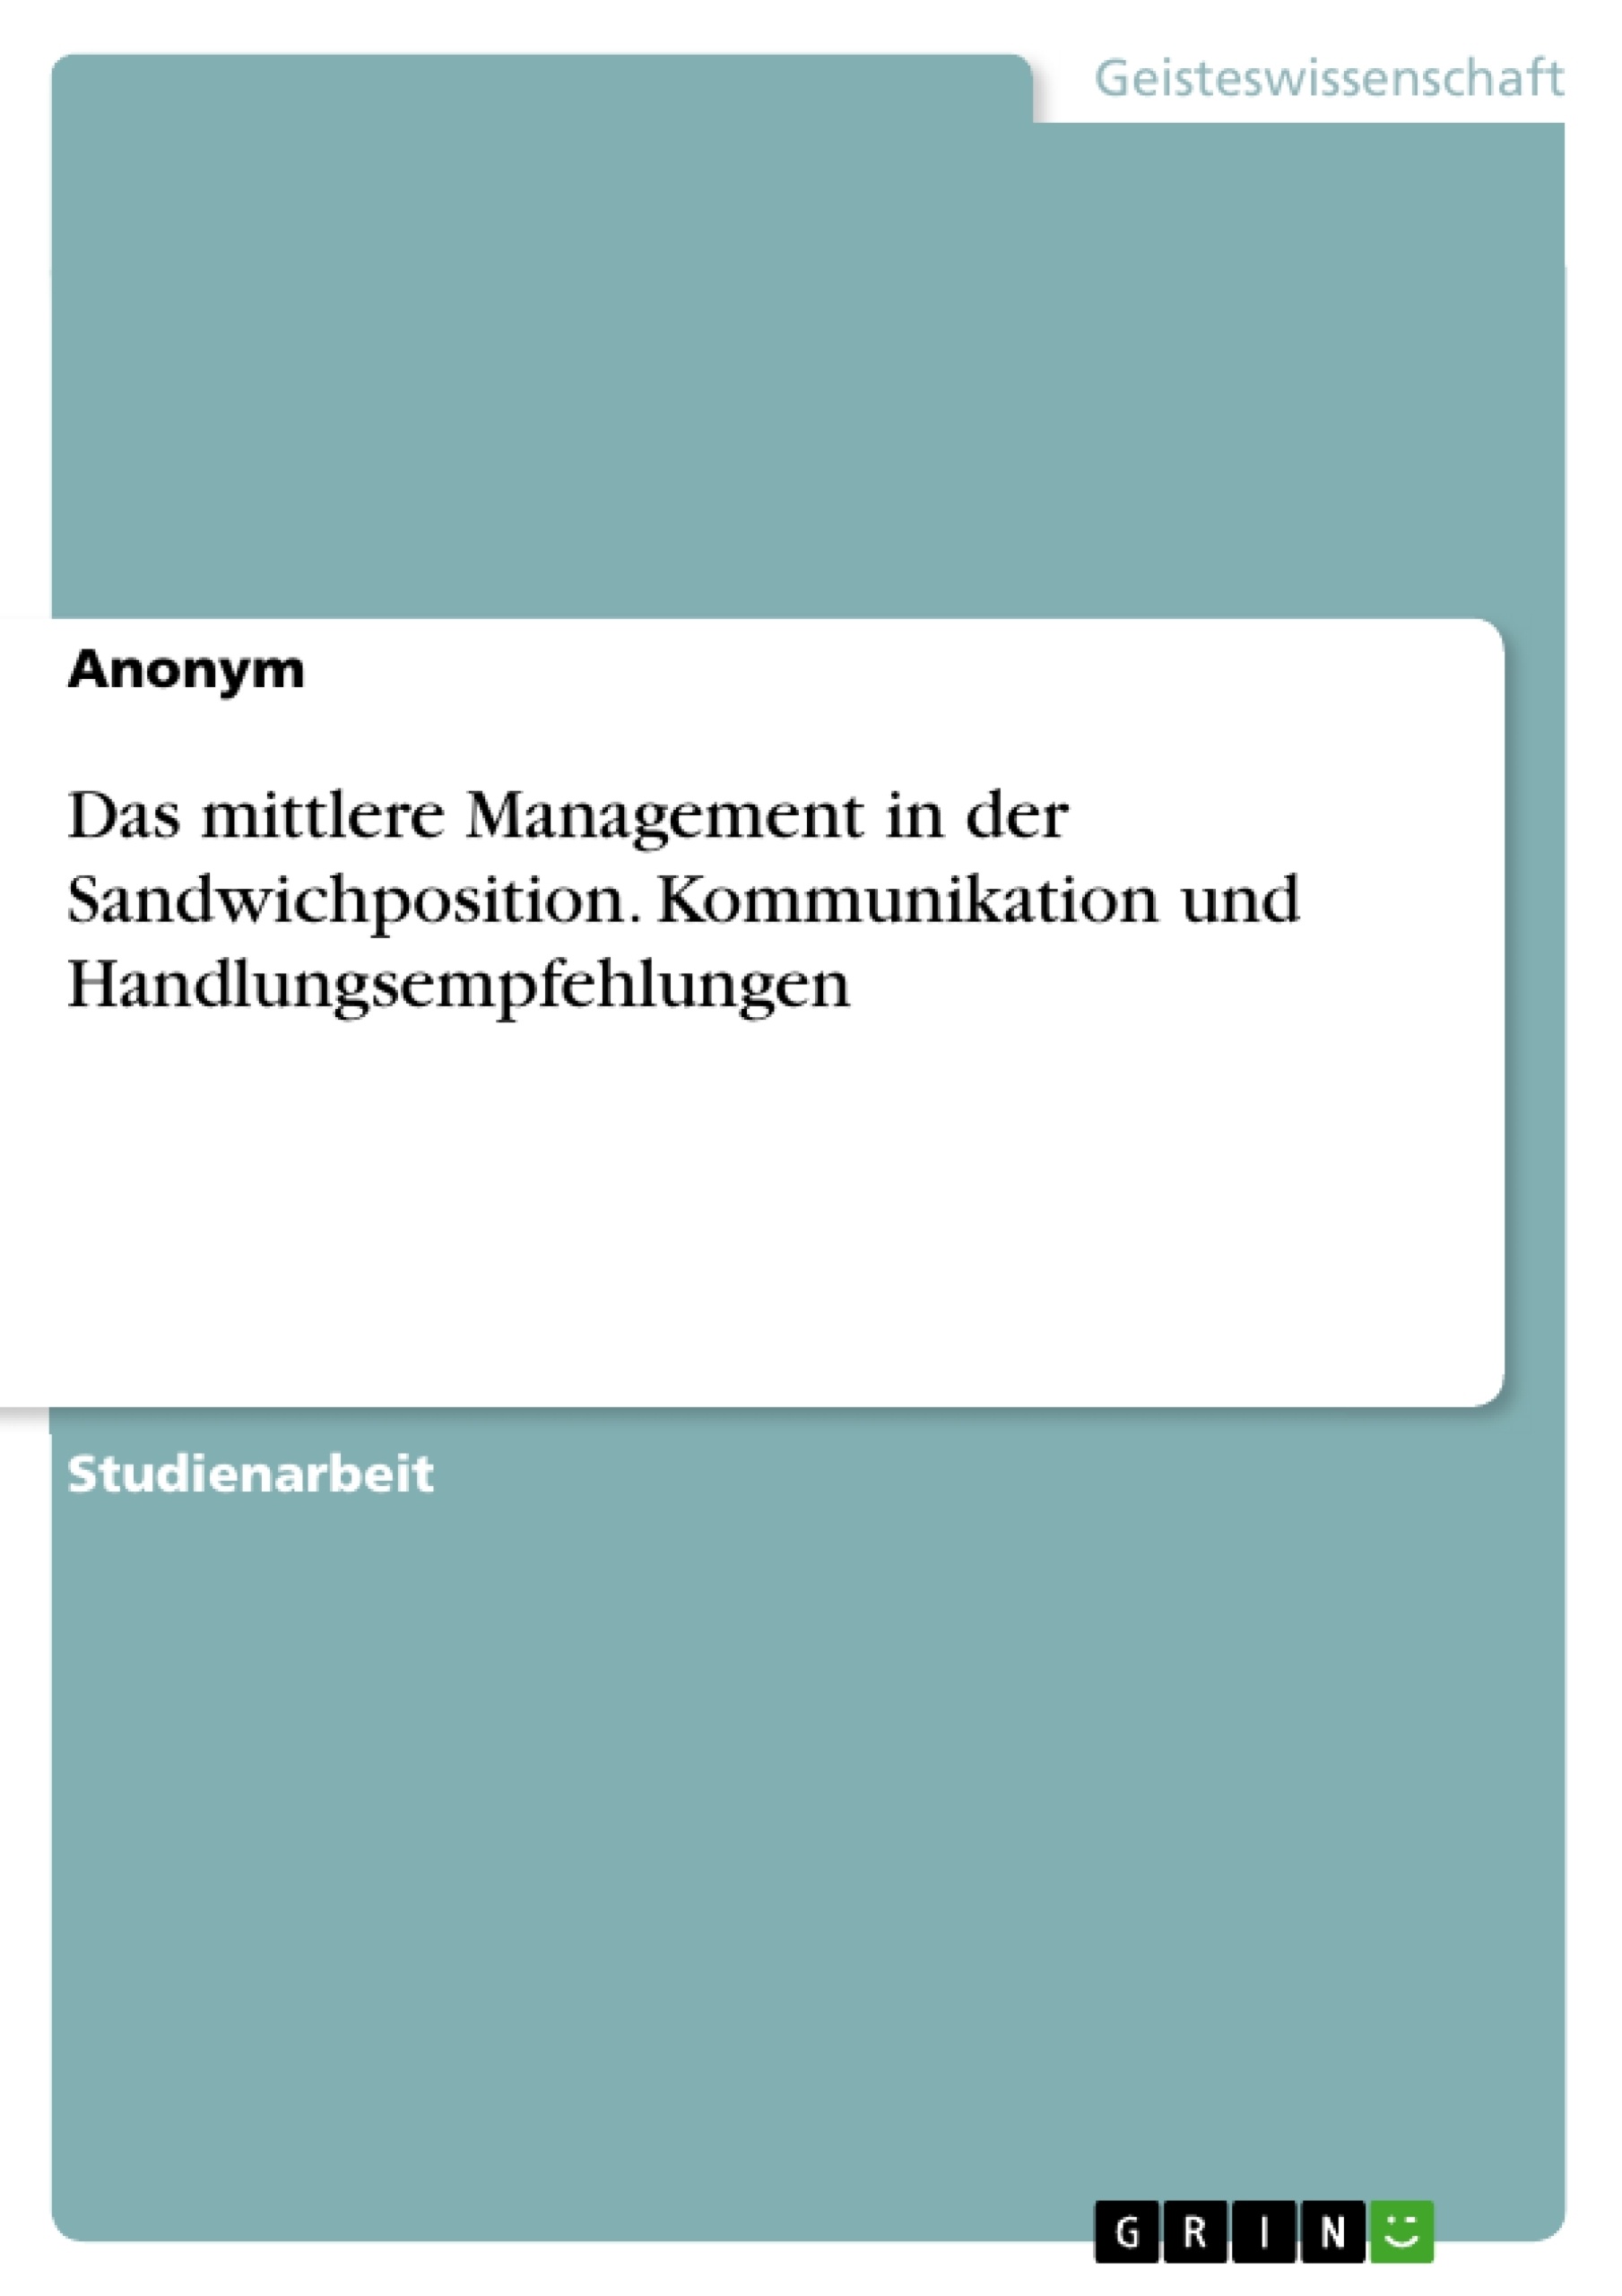 Title: Das mittlere Management in der Sandwichposition. Kommunikation und Handlungsempfehlungen